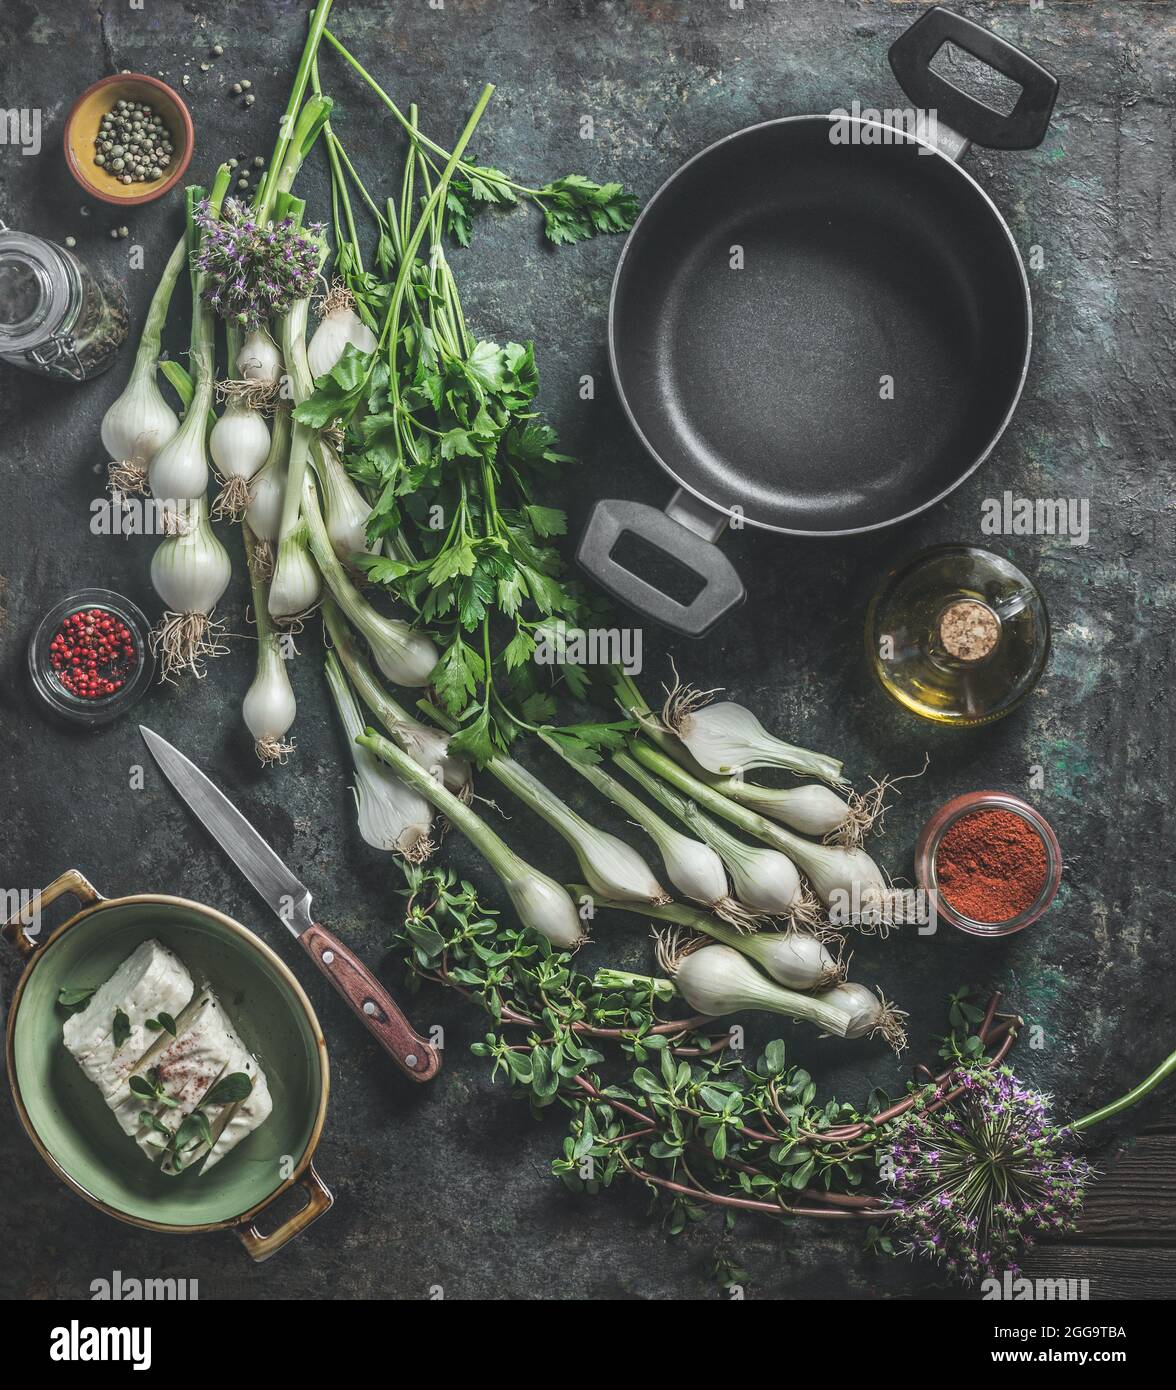 Videz la casserole noire et la variété d'herbes fraîches pour cuisiner sur une table rustique sombre avec couteau, fromages, huile d'olive et épices. Cuisine maison. Vue de dessus Banque D'Images